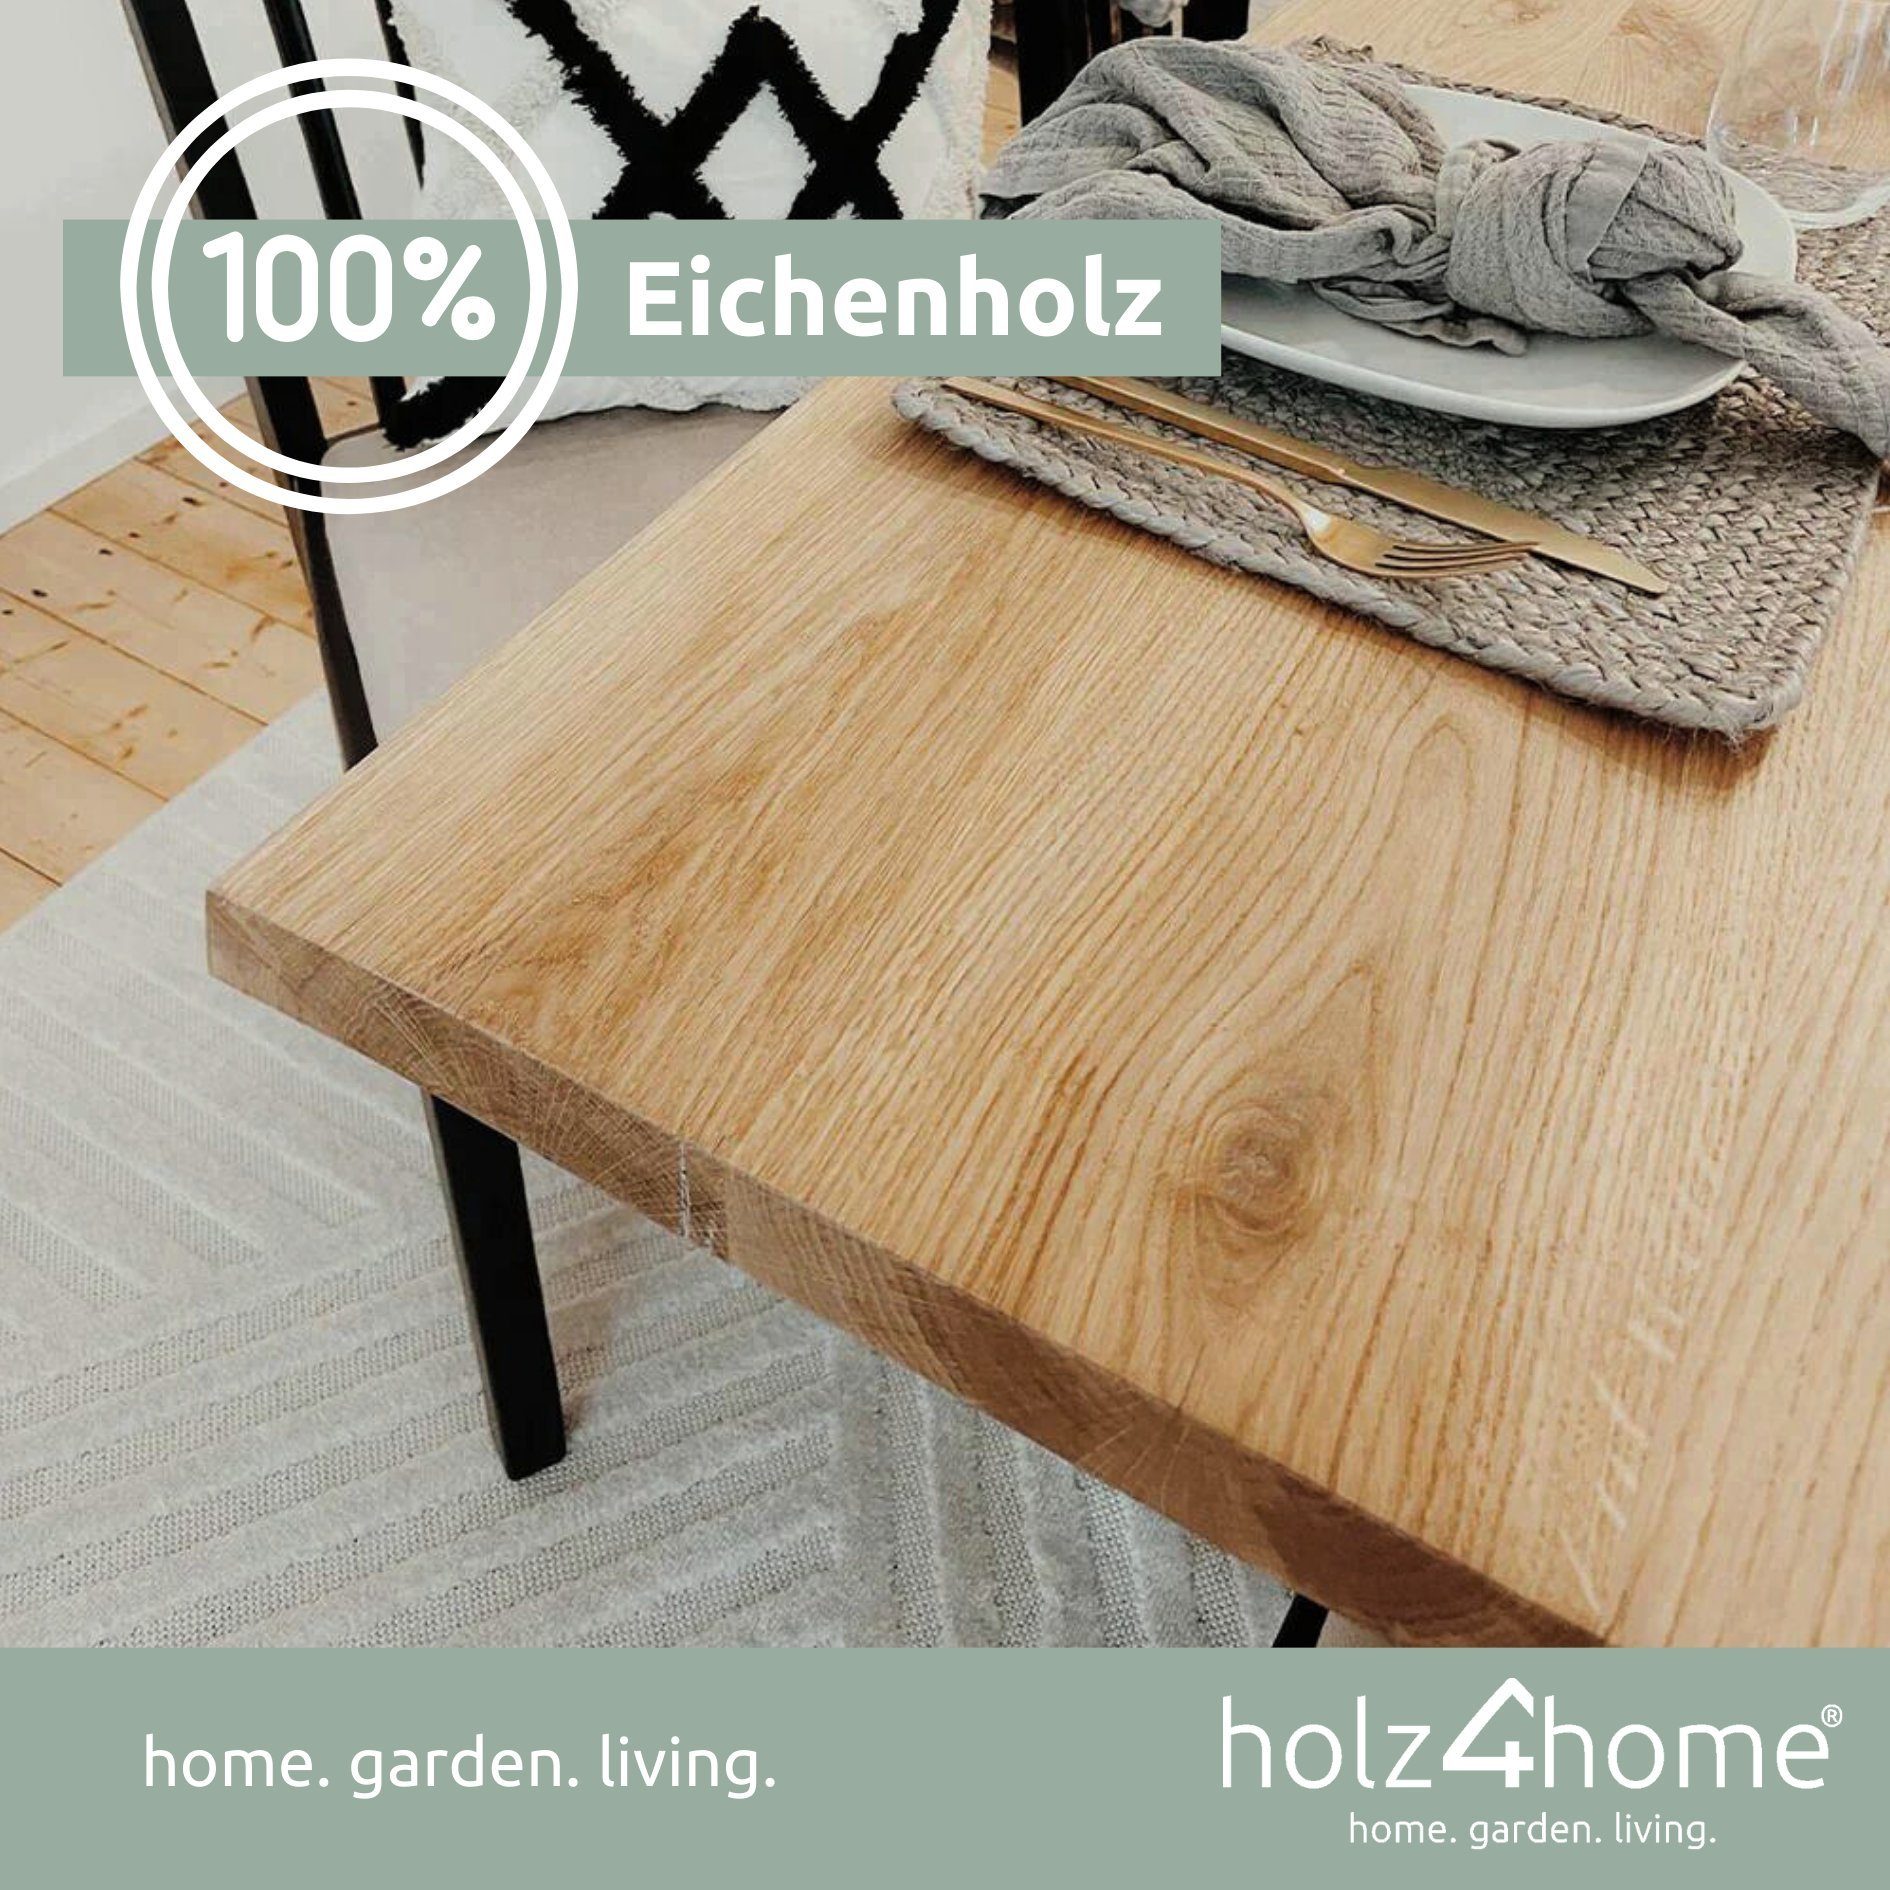 Esstischplatte holz4home Tischplatte Echtholz Eiche, Esstischplatte LxBxH, 220x100x4cm